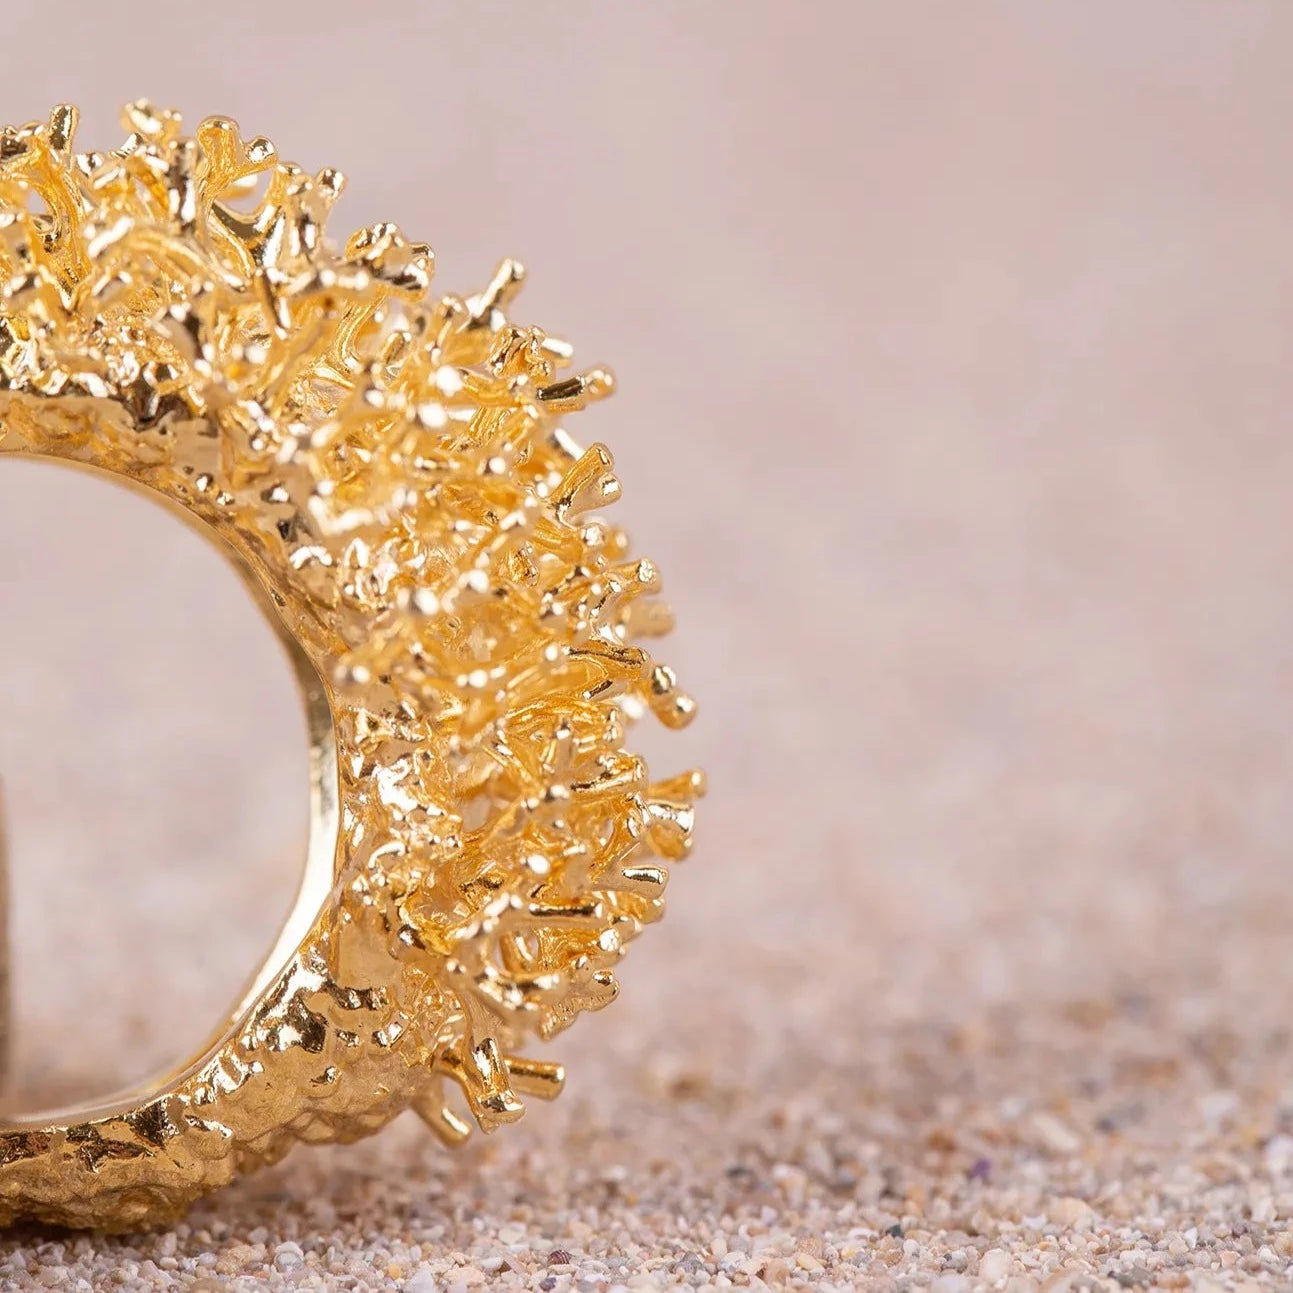 Detalles en macro del Anillo Coralina bañado en Oro posado de perfil sobre arena.